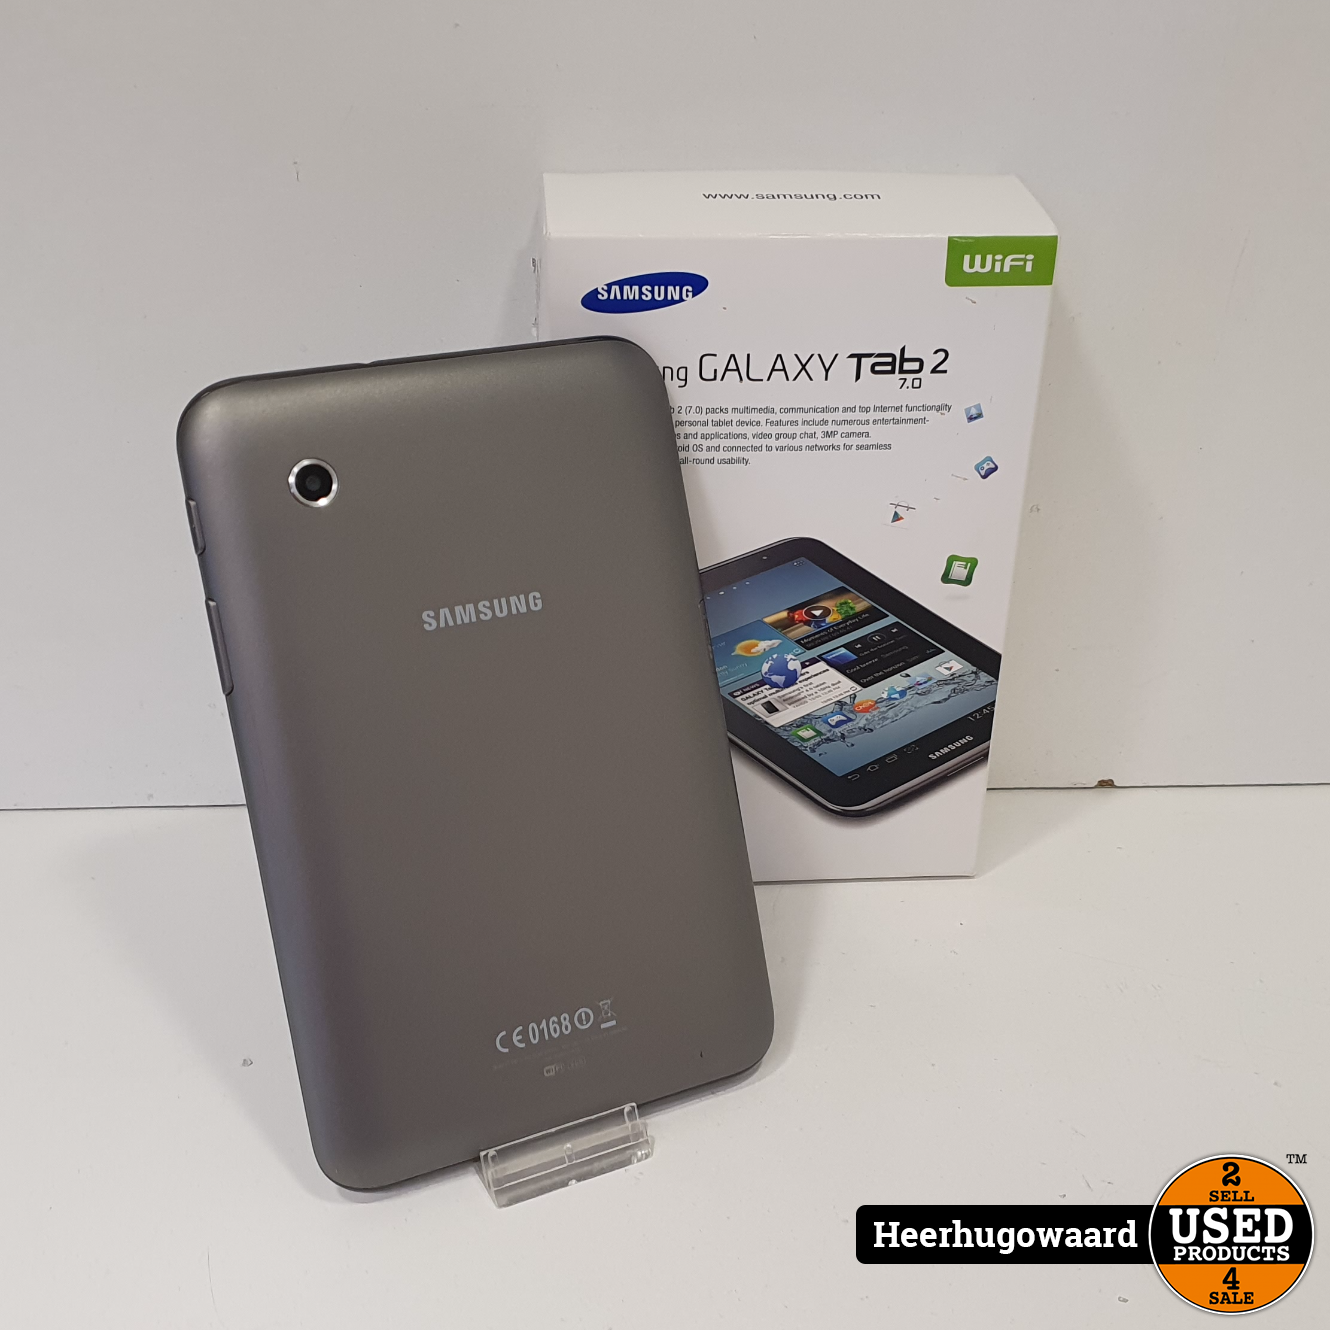 Samsung Galaxy Tab 2 7.0 Black Compleet in Nette Staat - Used Products Heerhugowaard